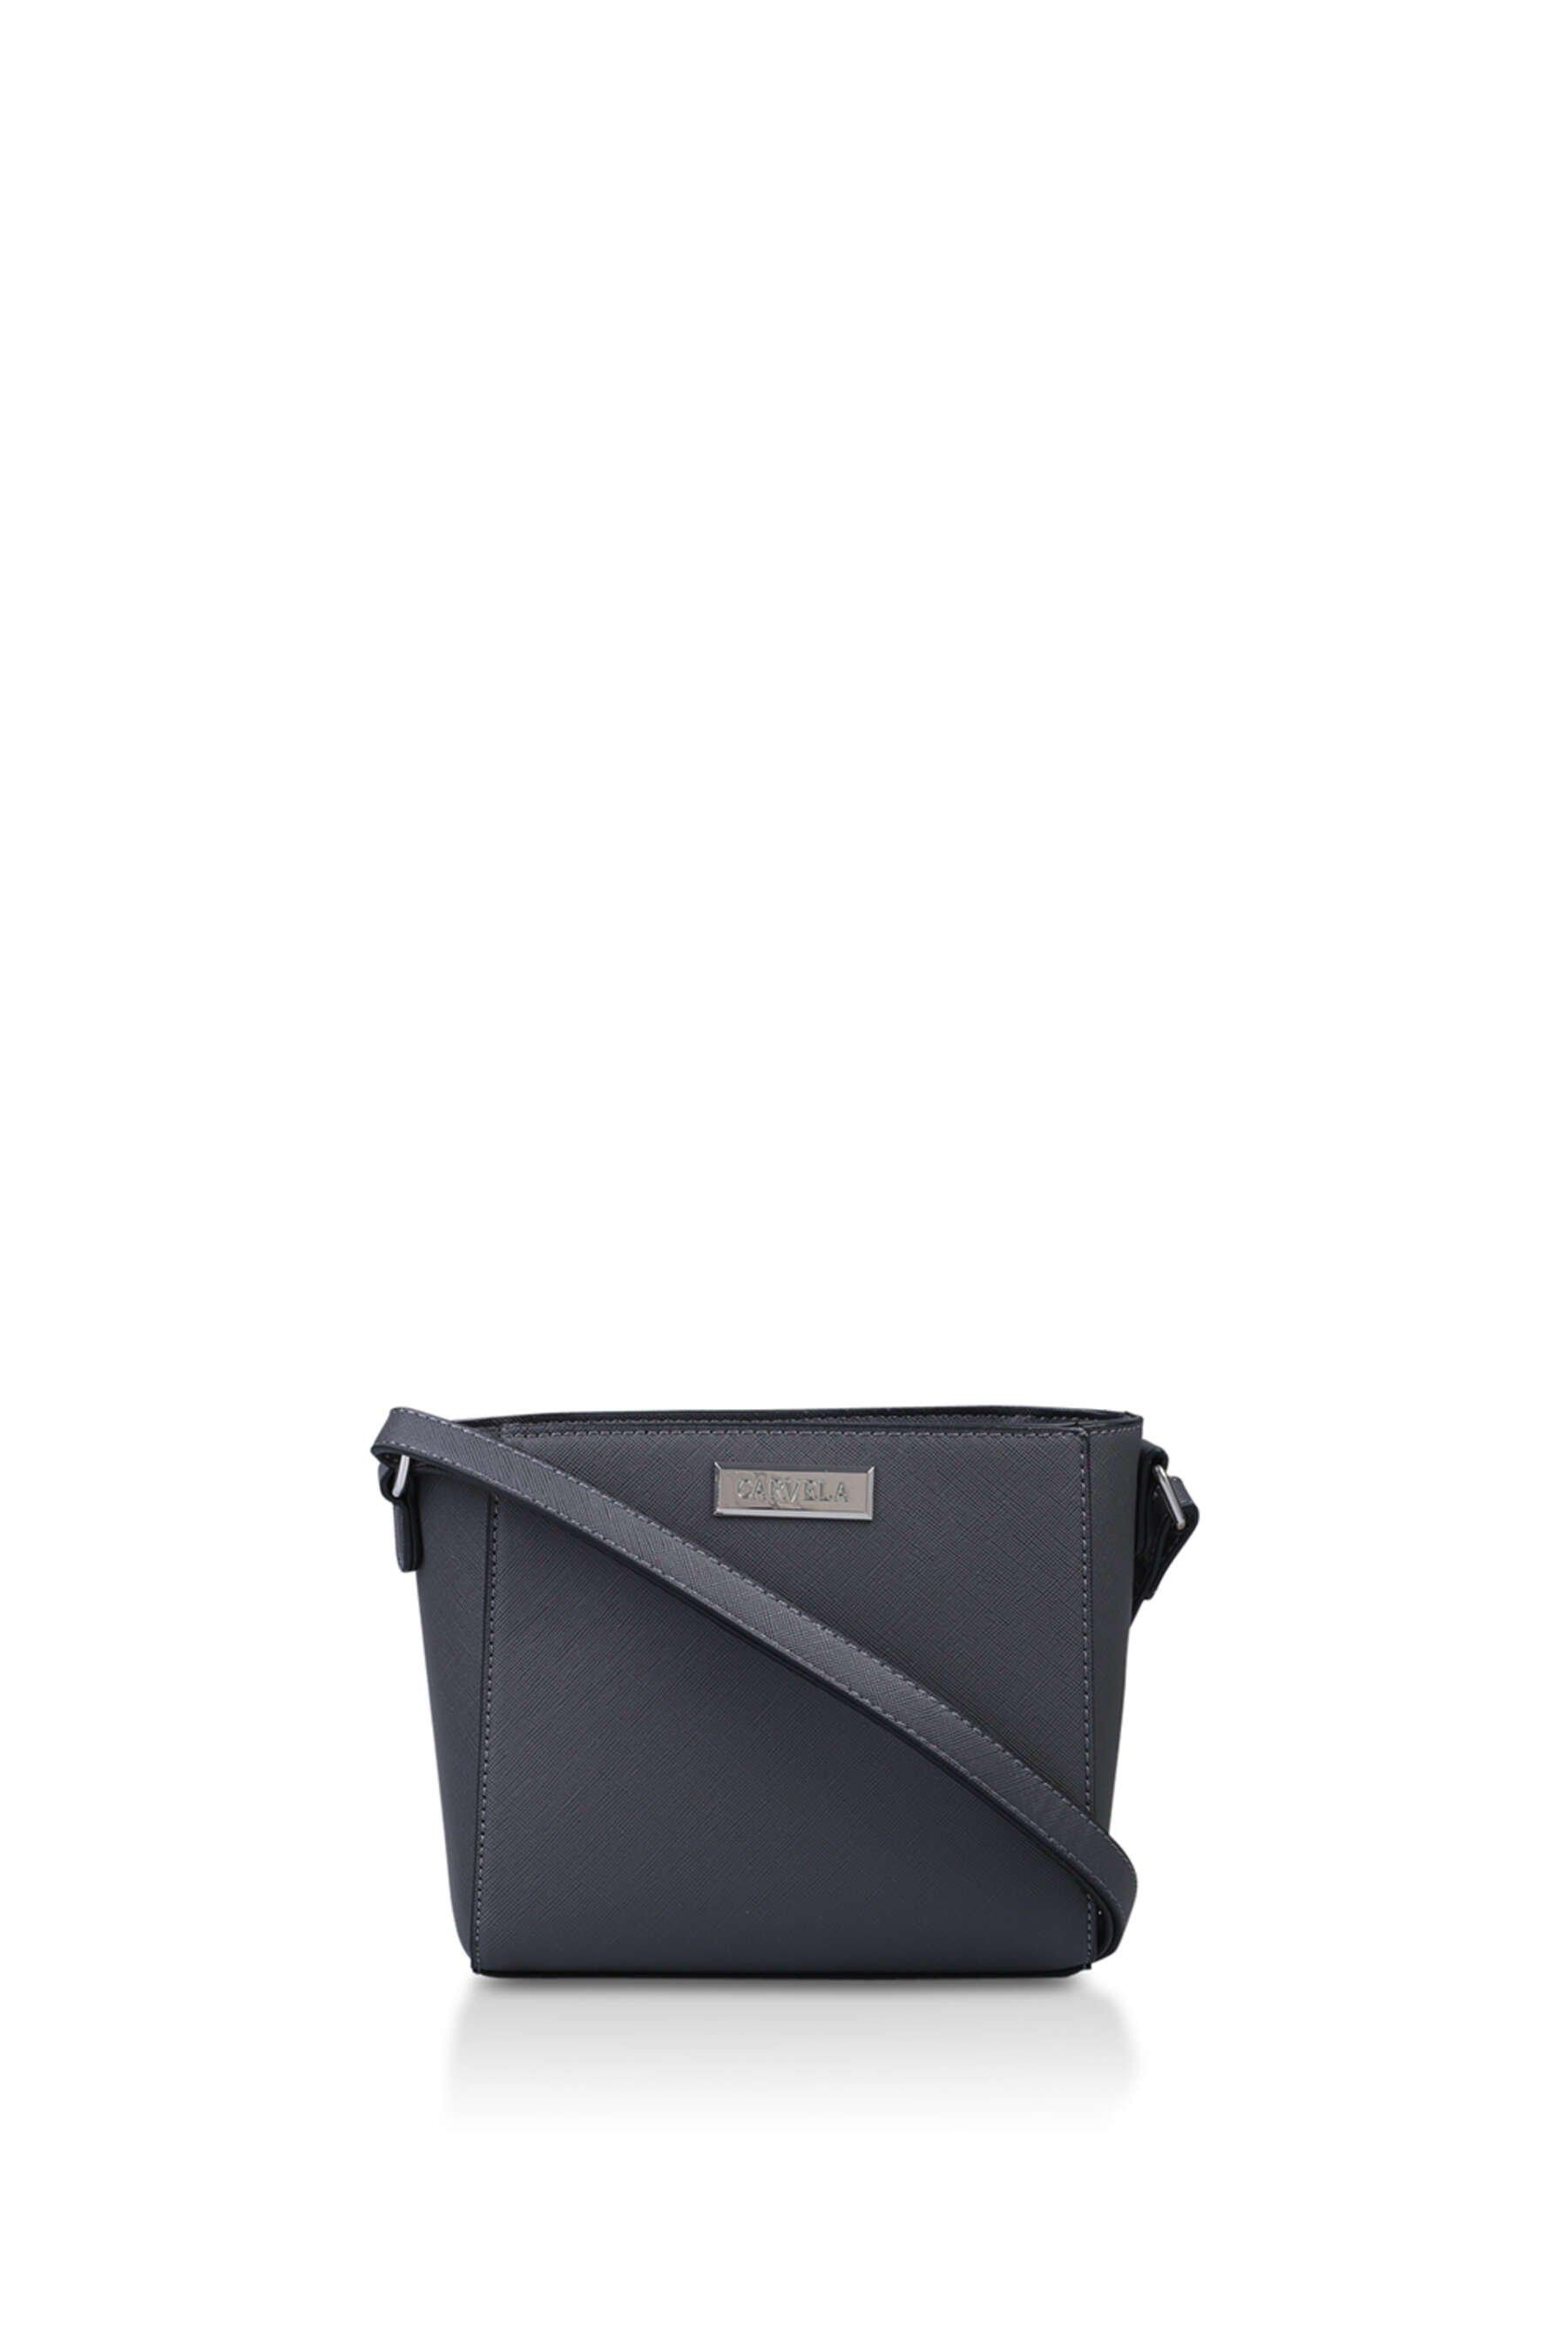 Buy Grey Handbags for Women by KLEIO Online | Ajio.com